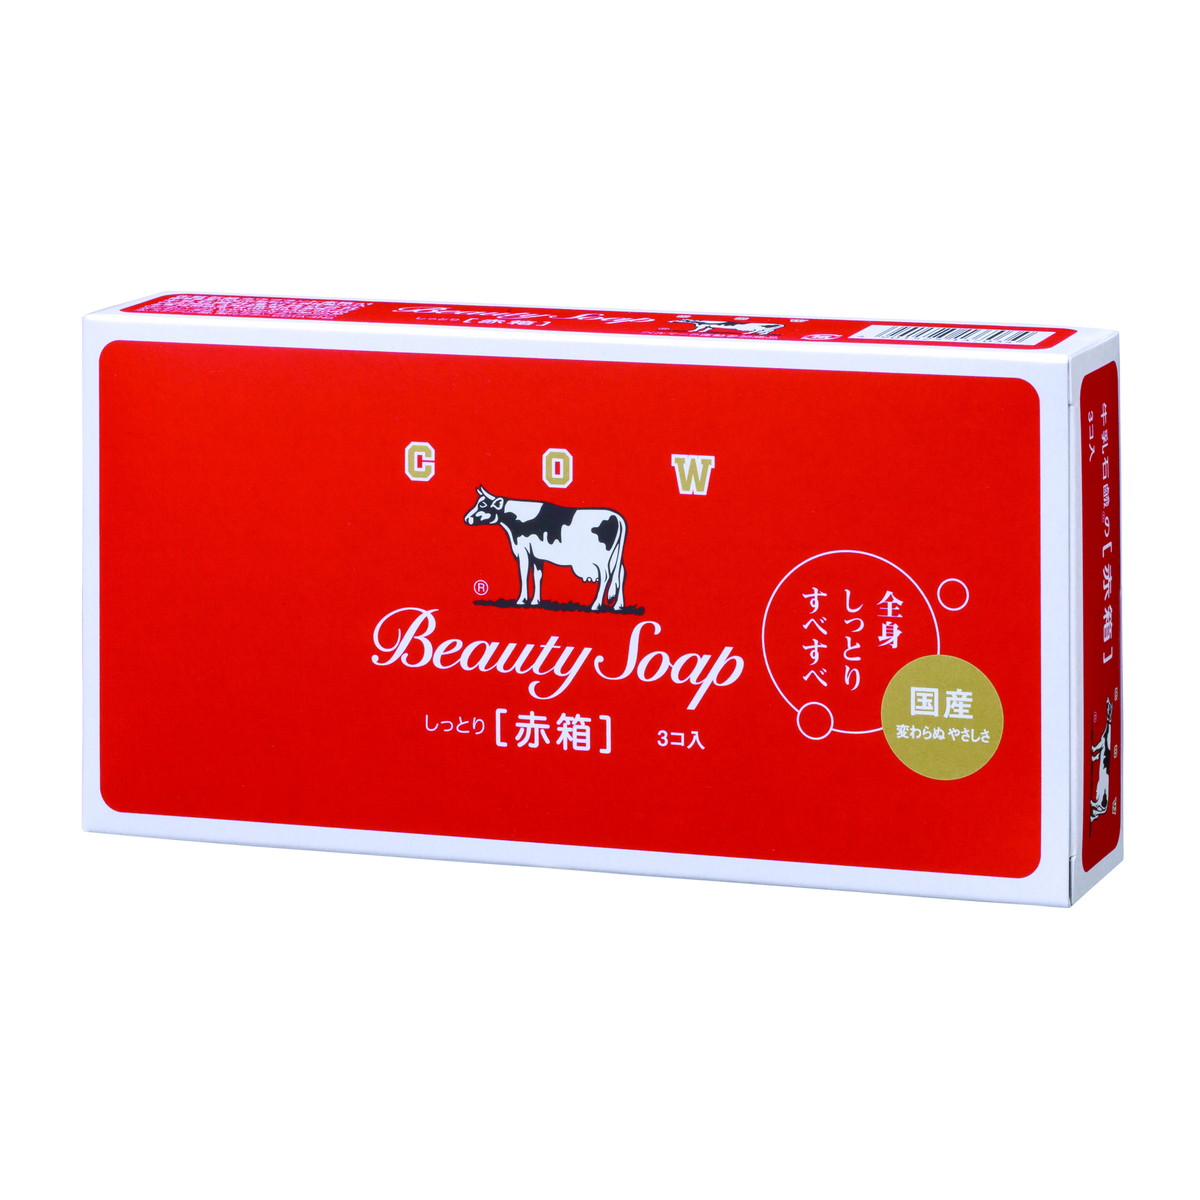 牛乳石鹸 カウブランド 赤箱 レギュラーサイズ 90g 3個入×10 カウブランド バスソープ、石鹸の商品画像